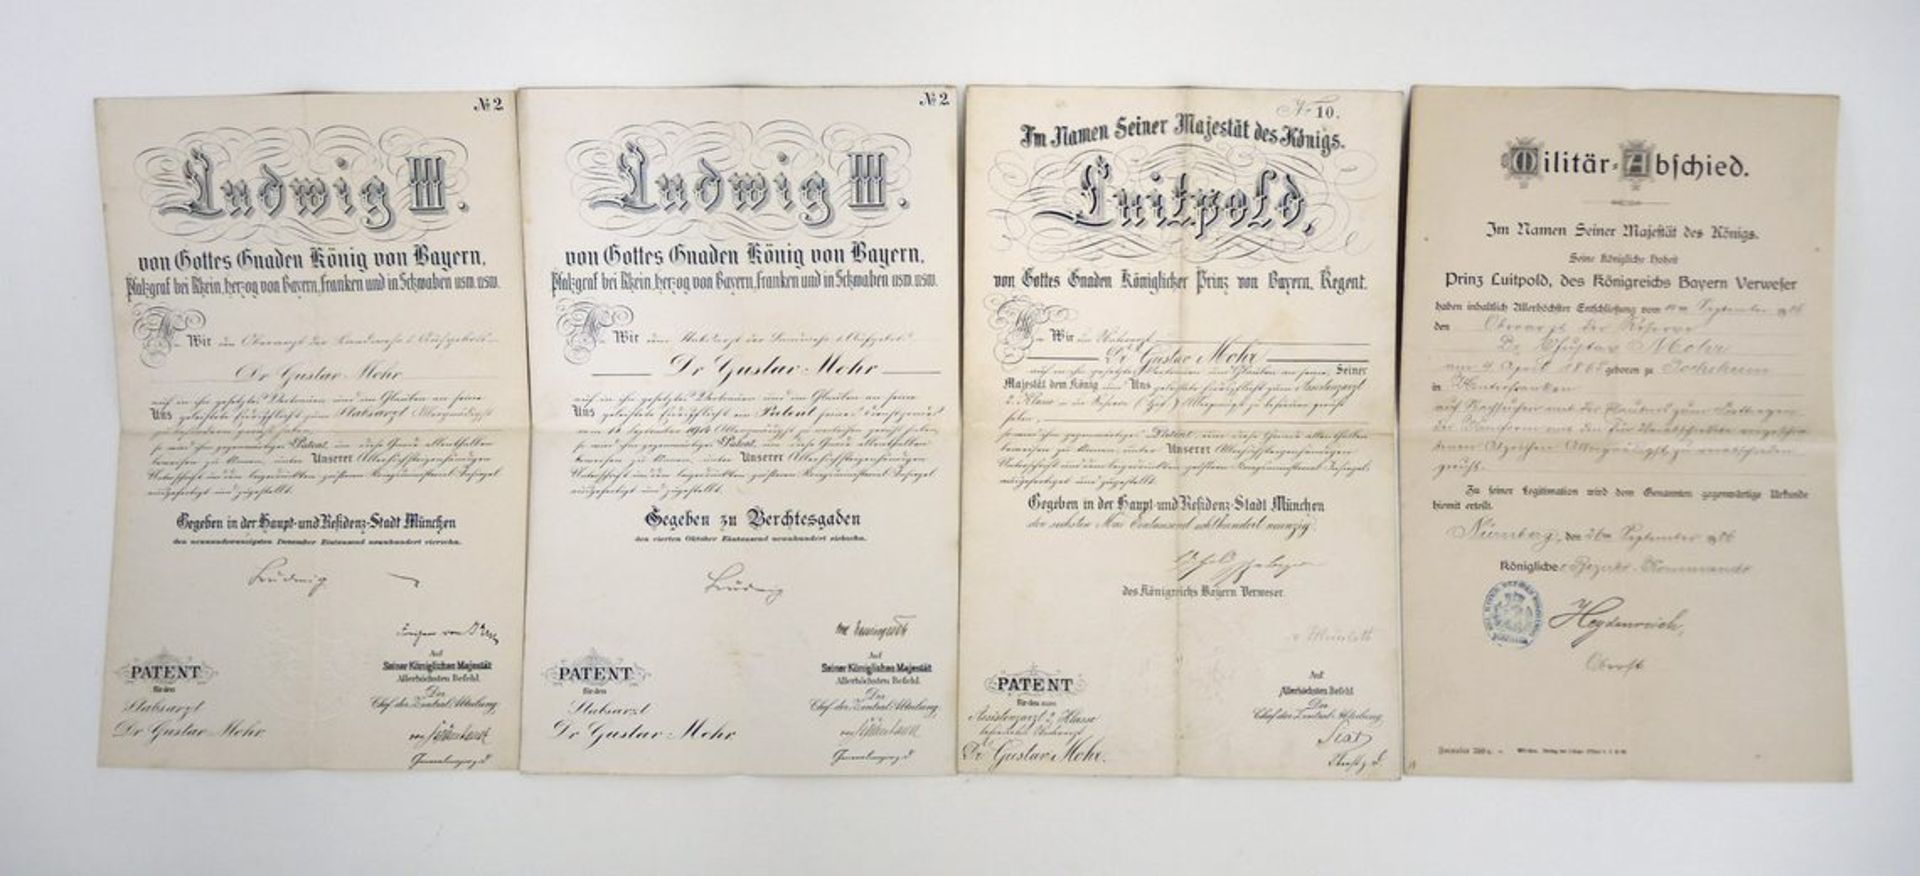 BayernDrei Patente und eine Verabschiedungsurkunde. Das Patent von 1890 mit Unterschrift des